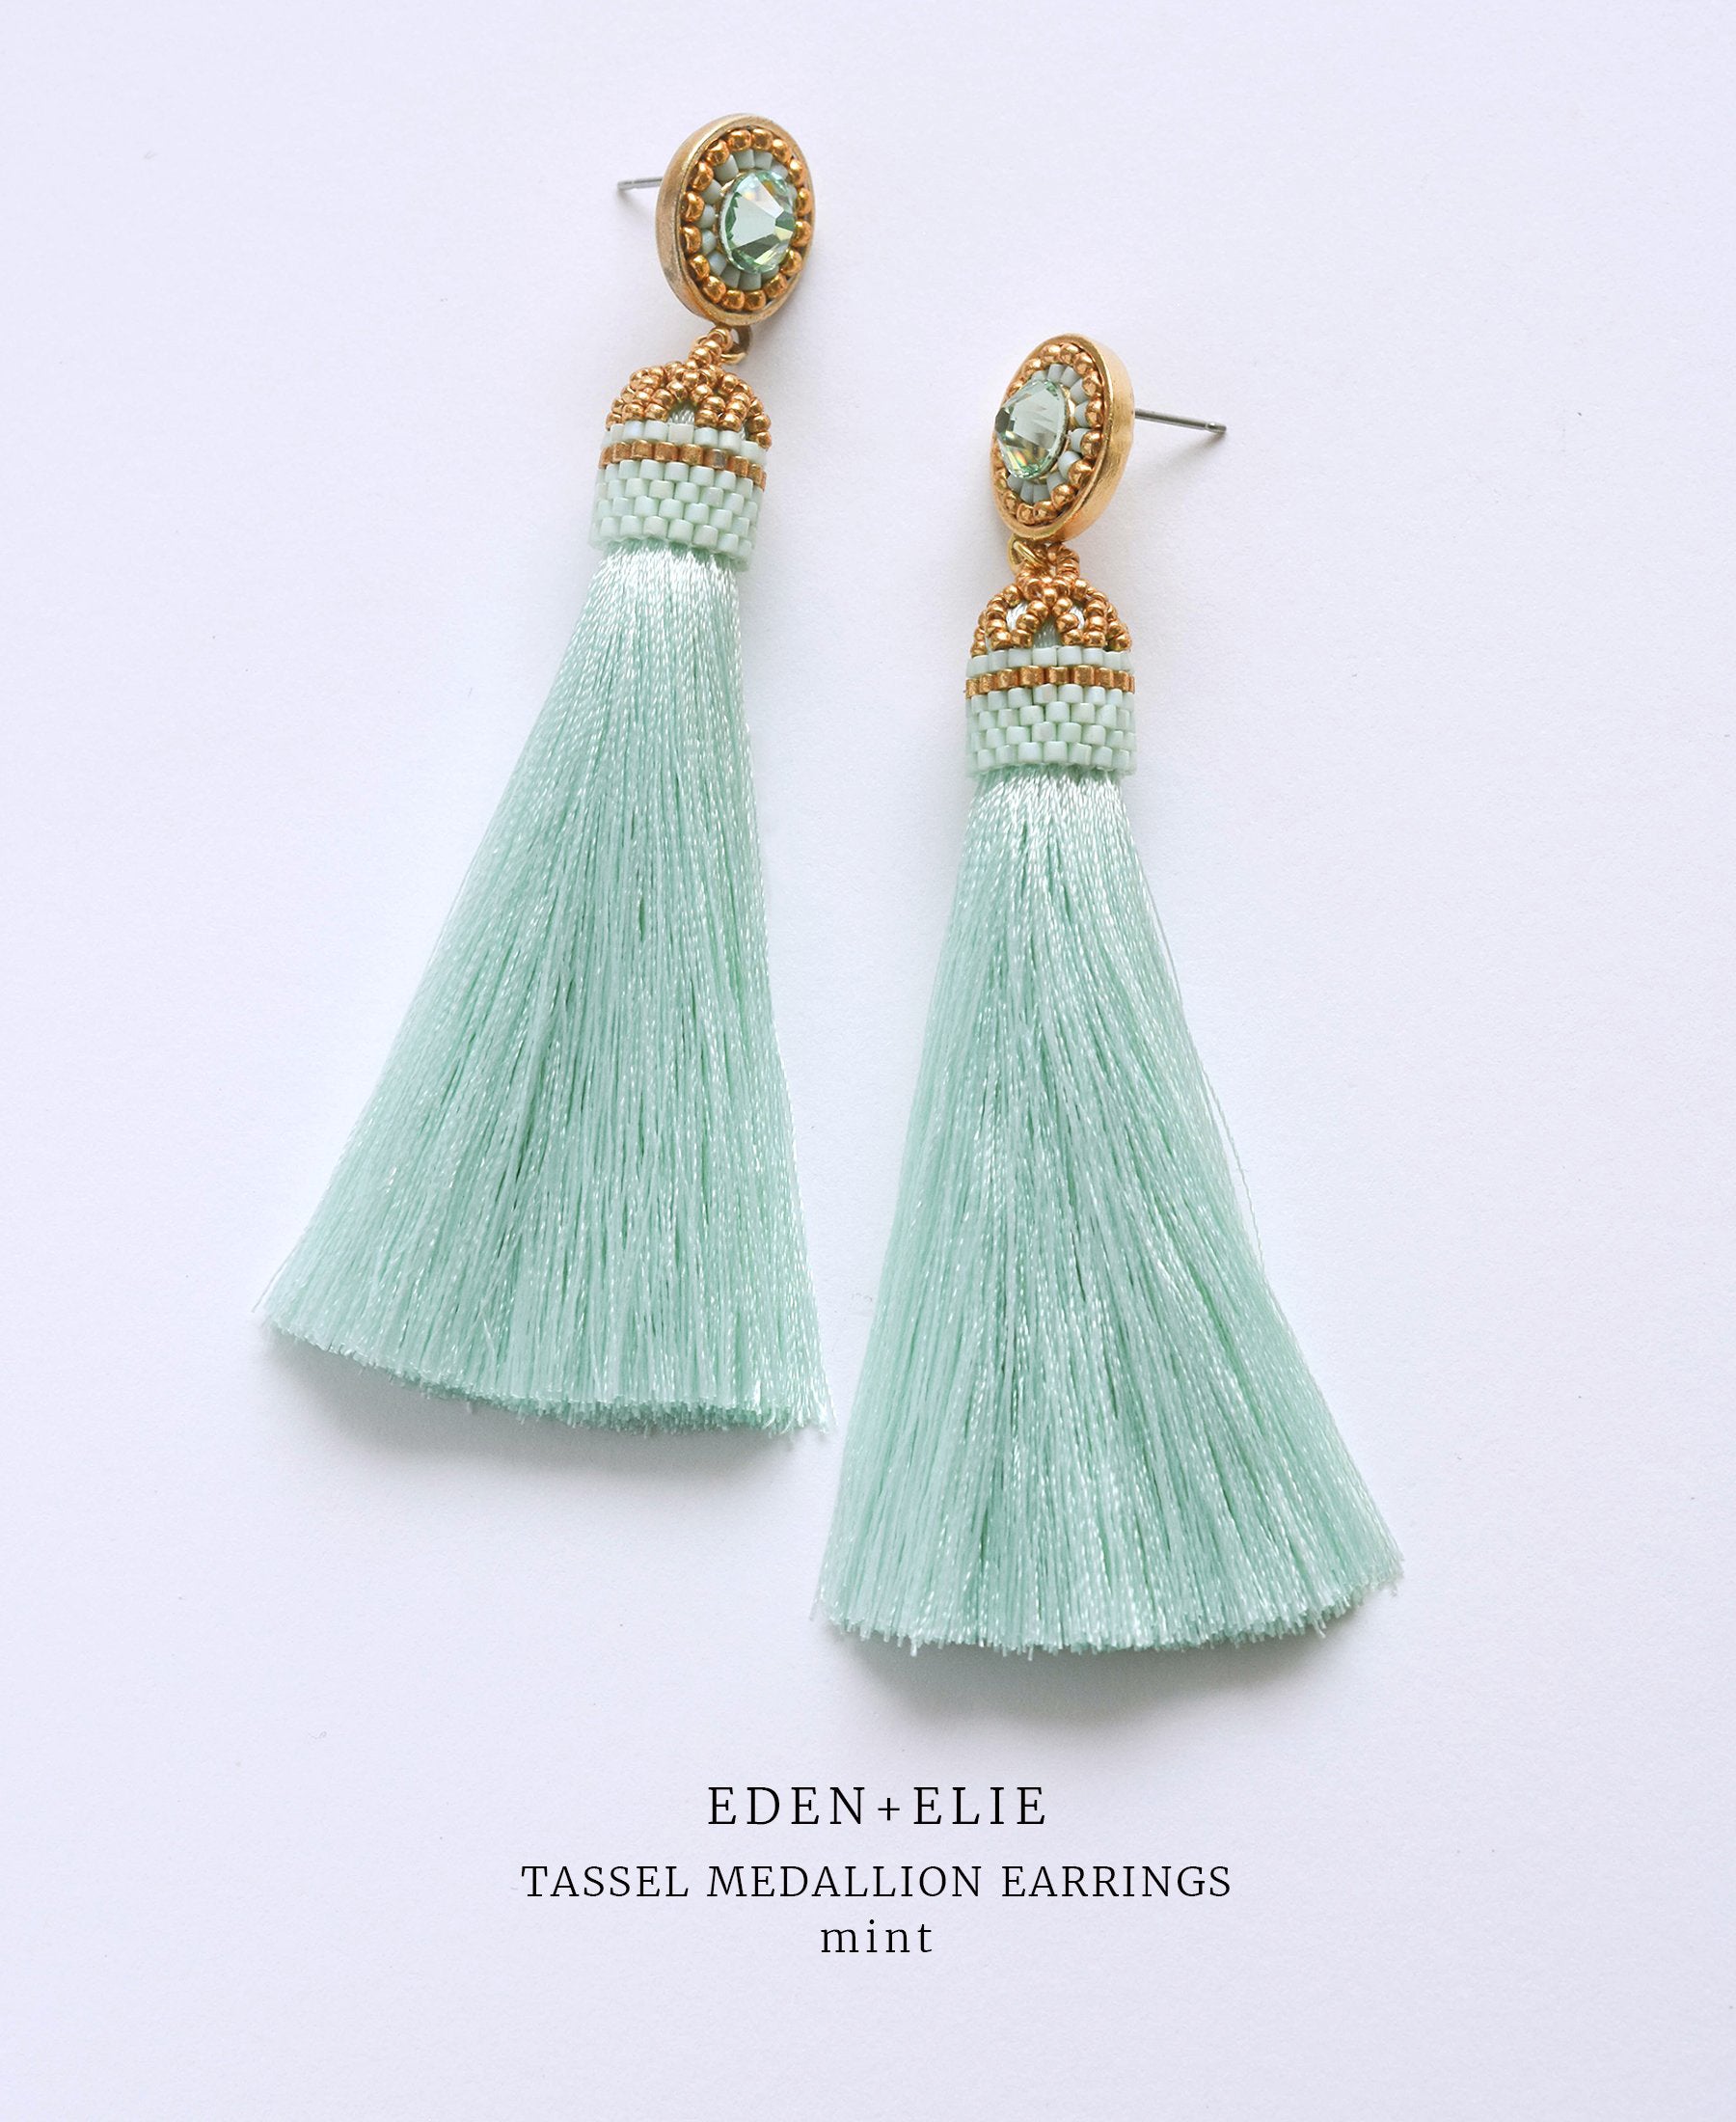 EDEN + ELIE silk tassel statement earrings - mint green